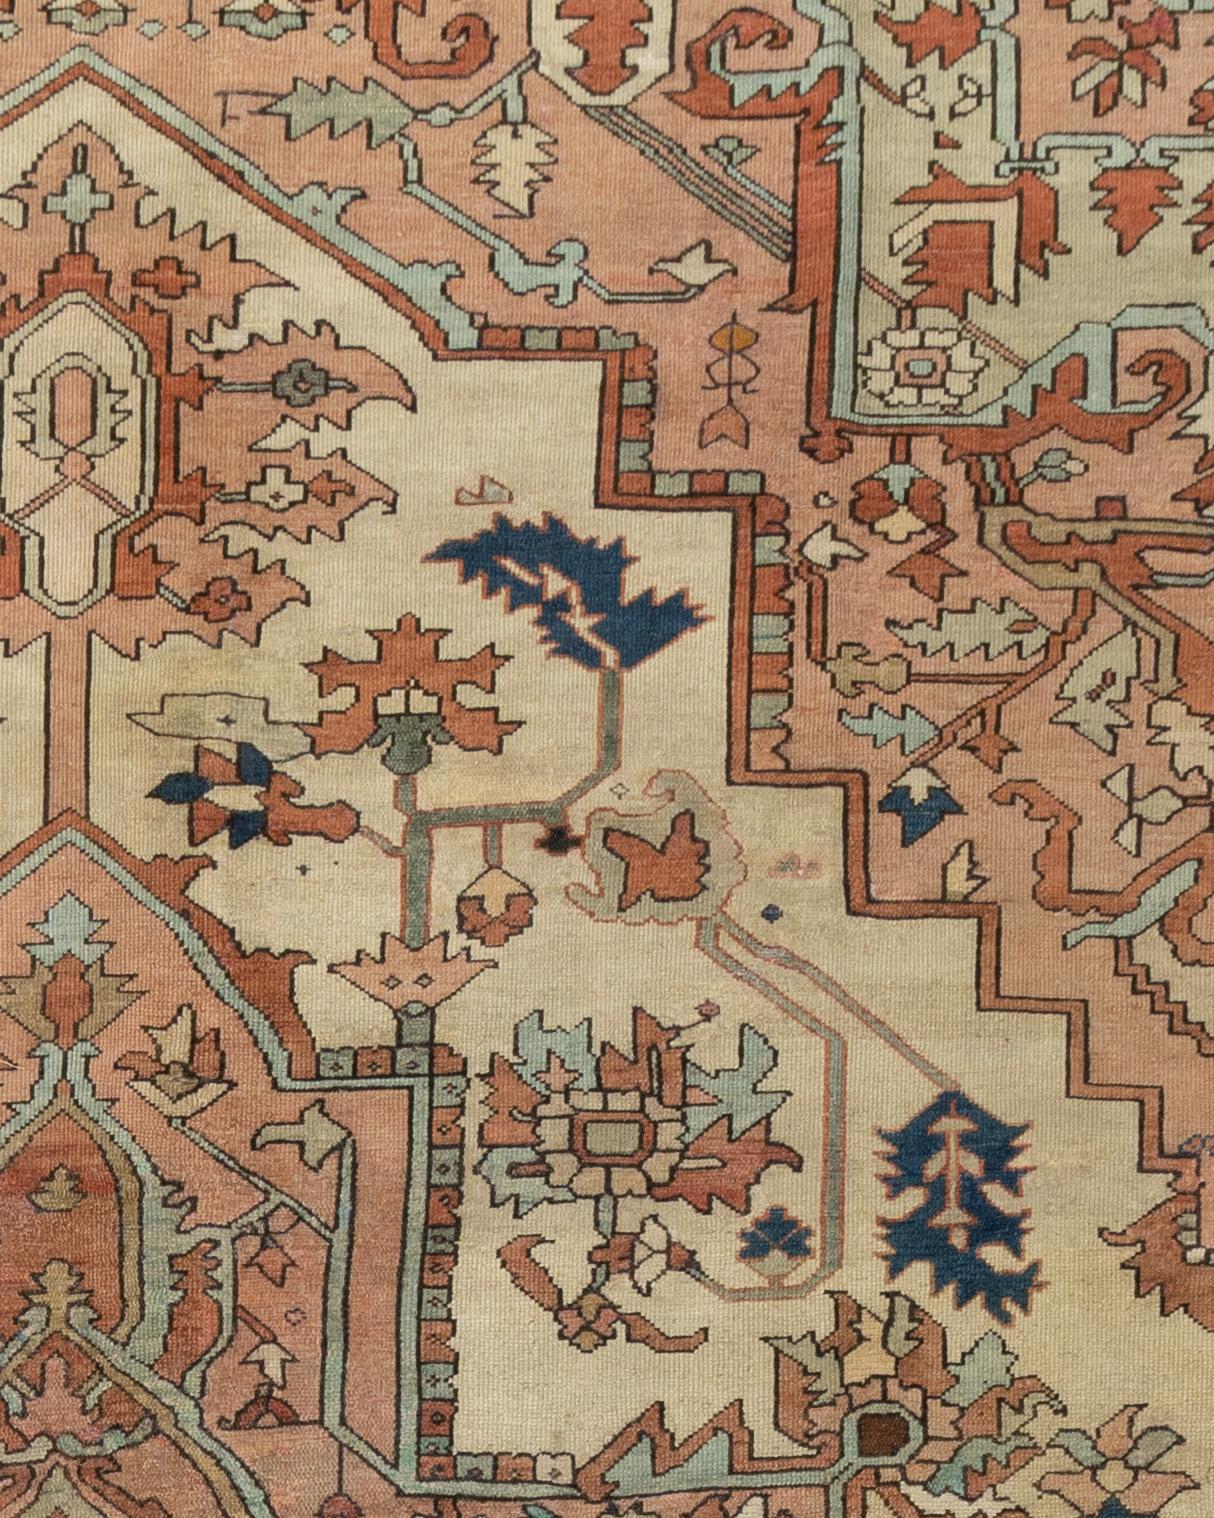 Tapis persan antique Heriz 9'3 x 13'5. Les tapis traditionnels Heriz, qui sont à la fois à la mode et de collection, sont habilement tissés dans des couleurs vibrantes et des motifs géométriques emphatiques. Le district de Heriz, dans le nord-ouest